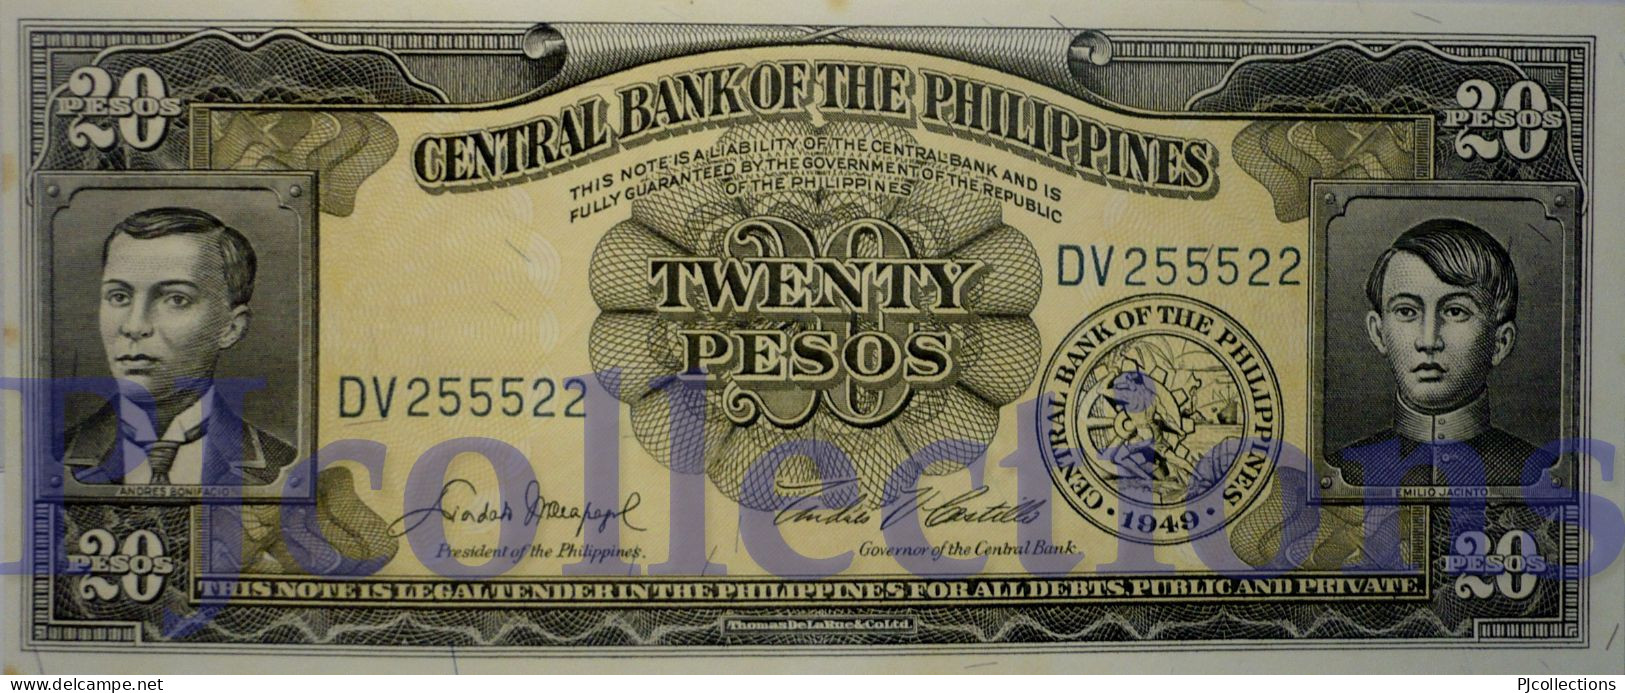 PHILIPPINES 20 PESOS 1949 PICK 137d UNC GOOD SERIAL NUMBER "DV255522" - Philippinen